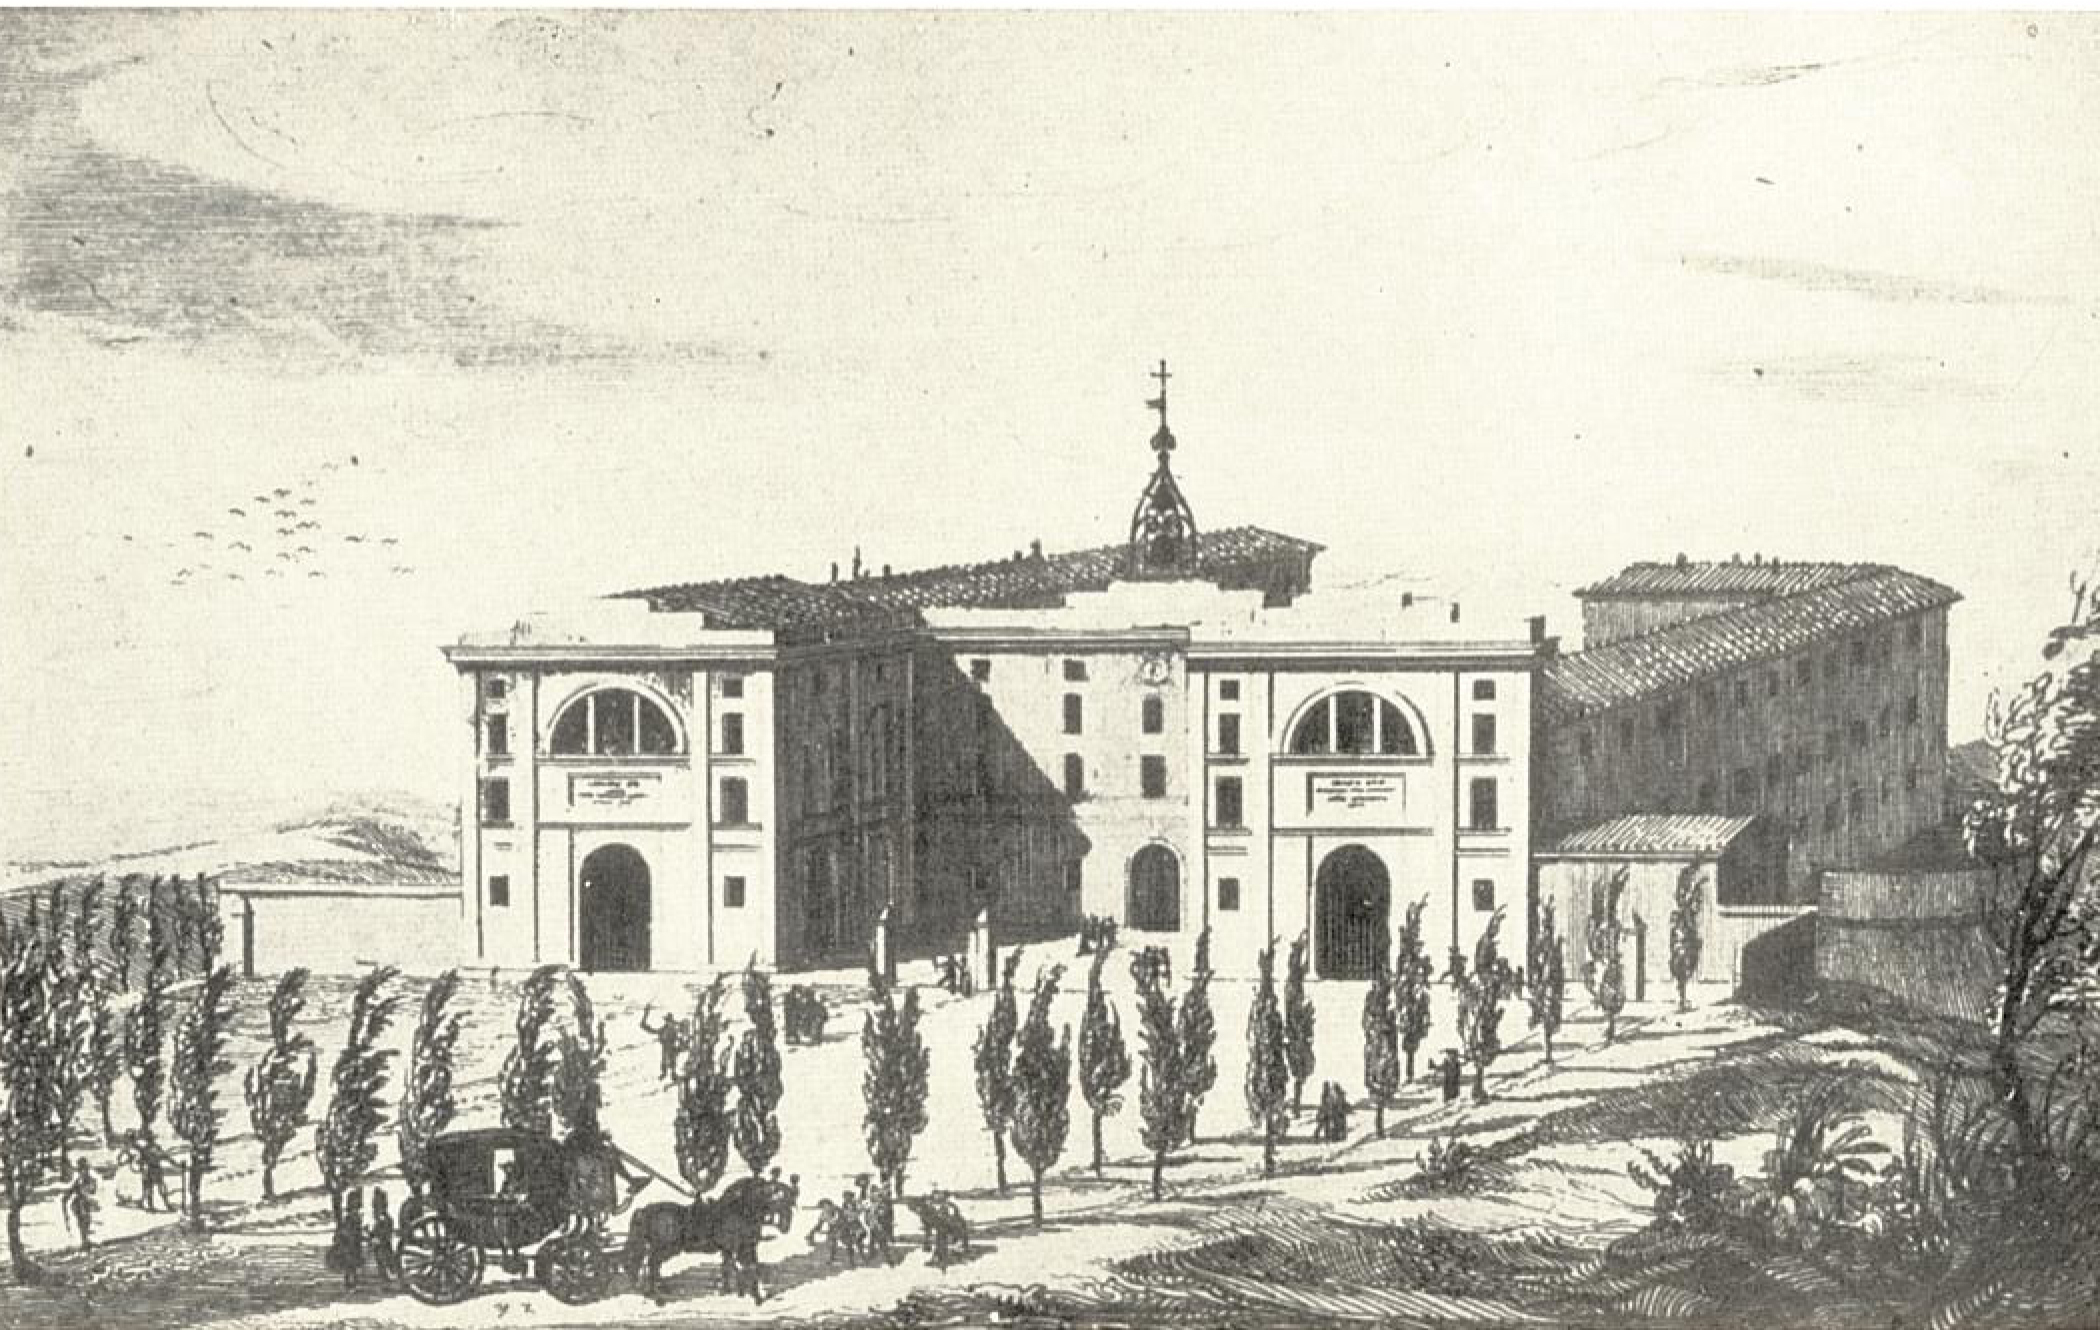 Il Manicomio di Perugia all'epoca della sua fondazione. (Da una stampa allegata alla relazione Cellini)